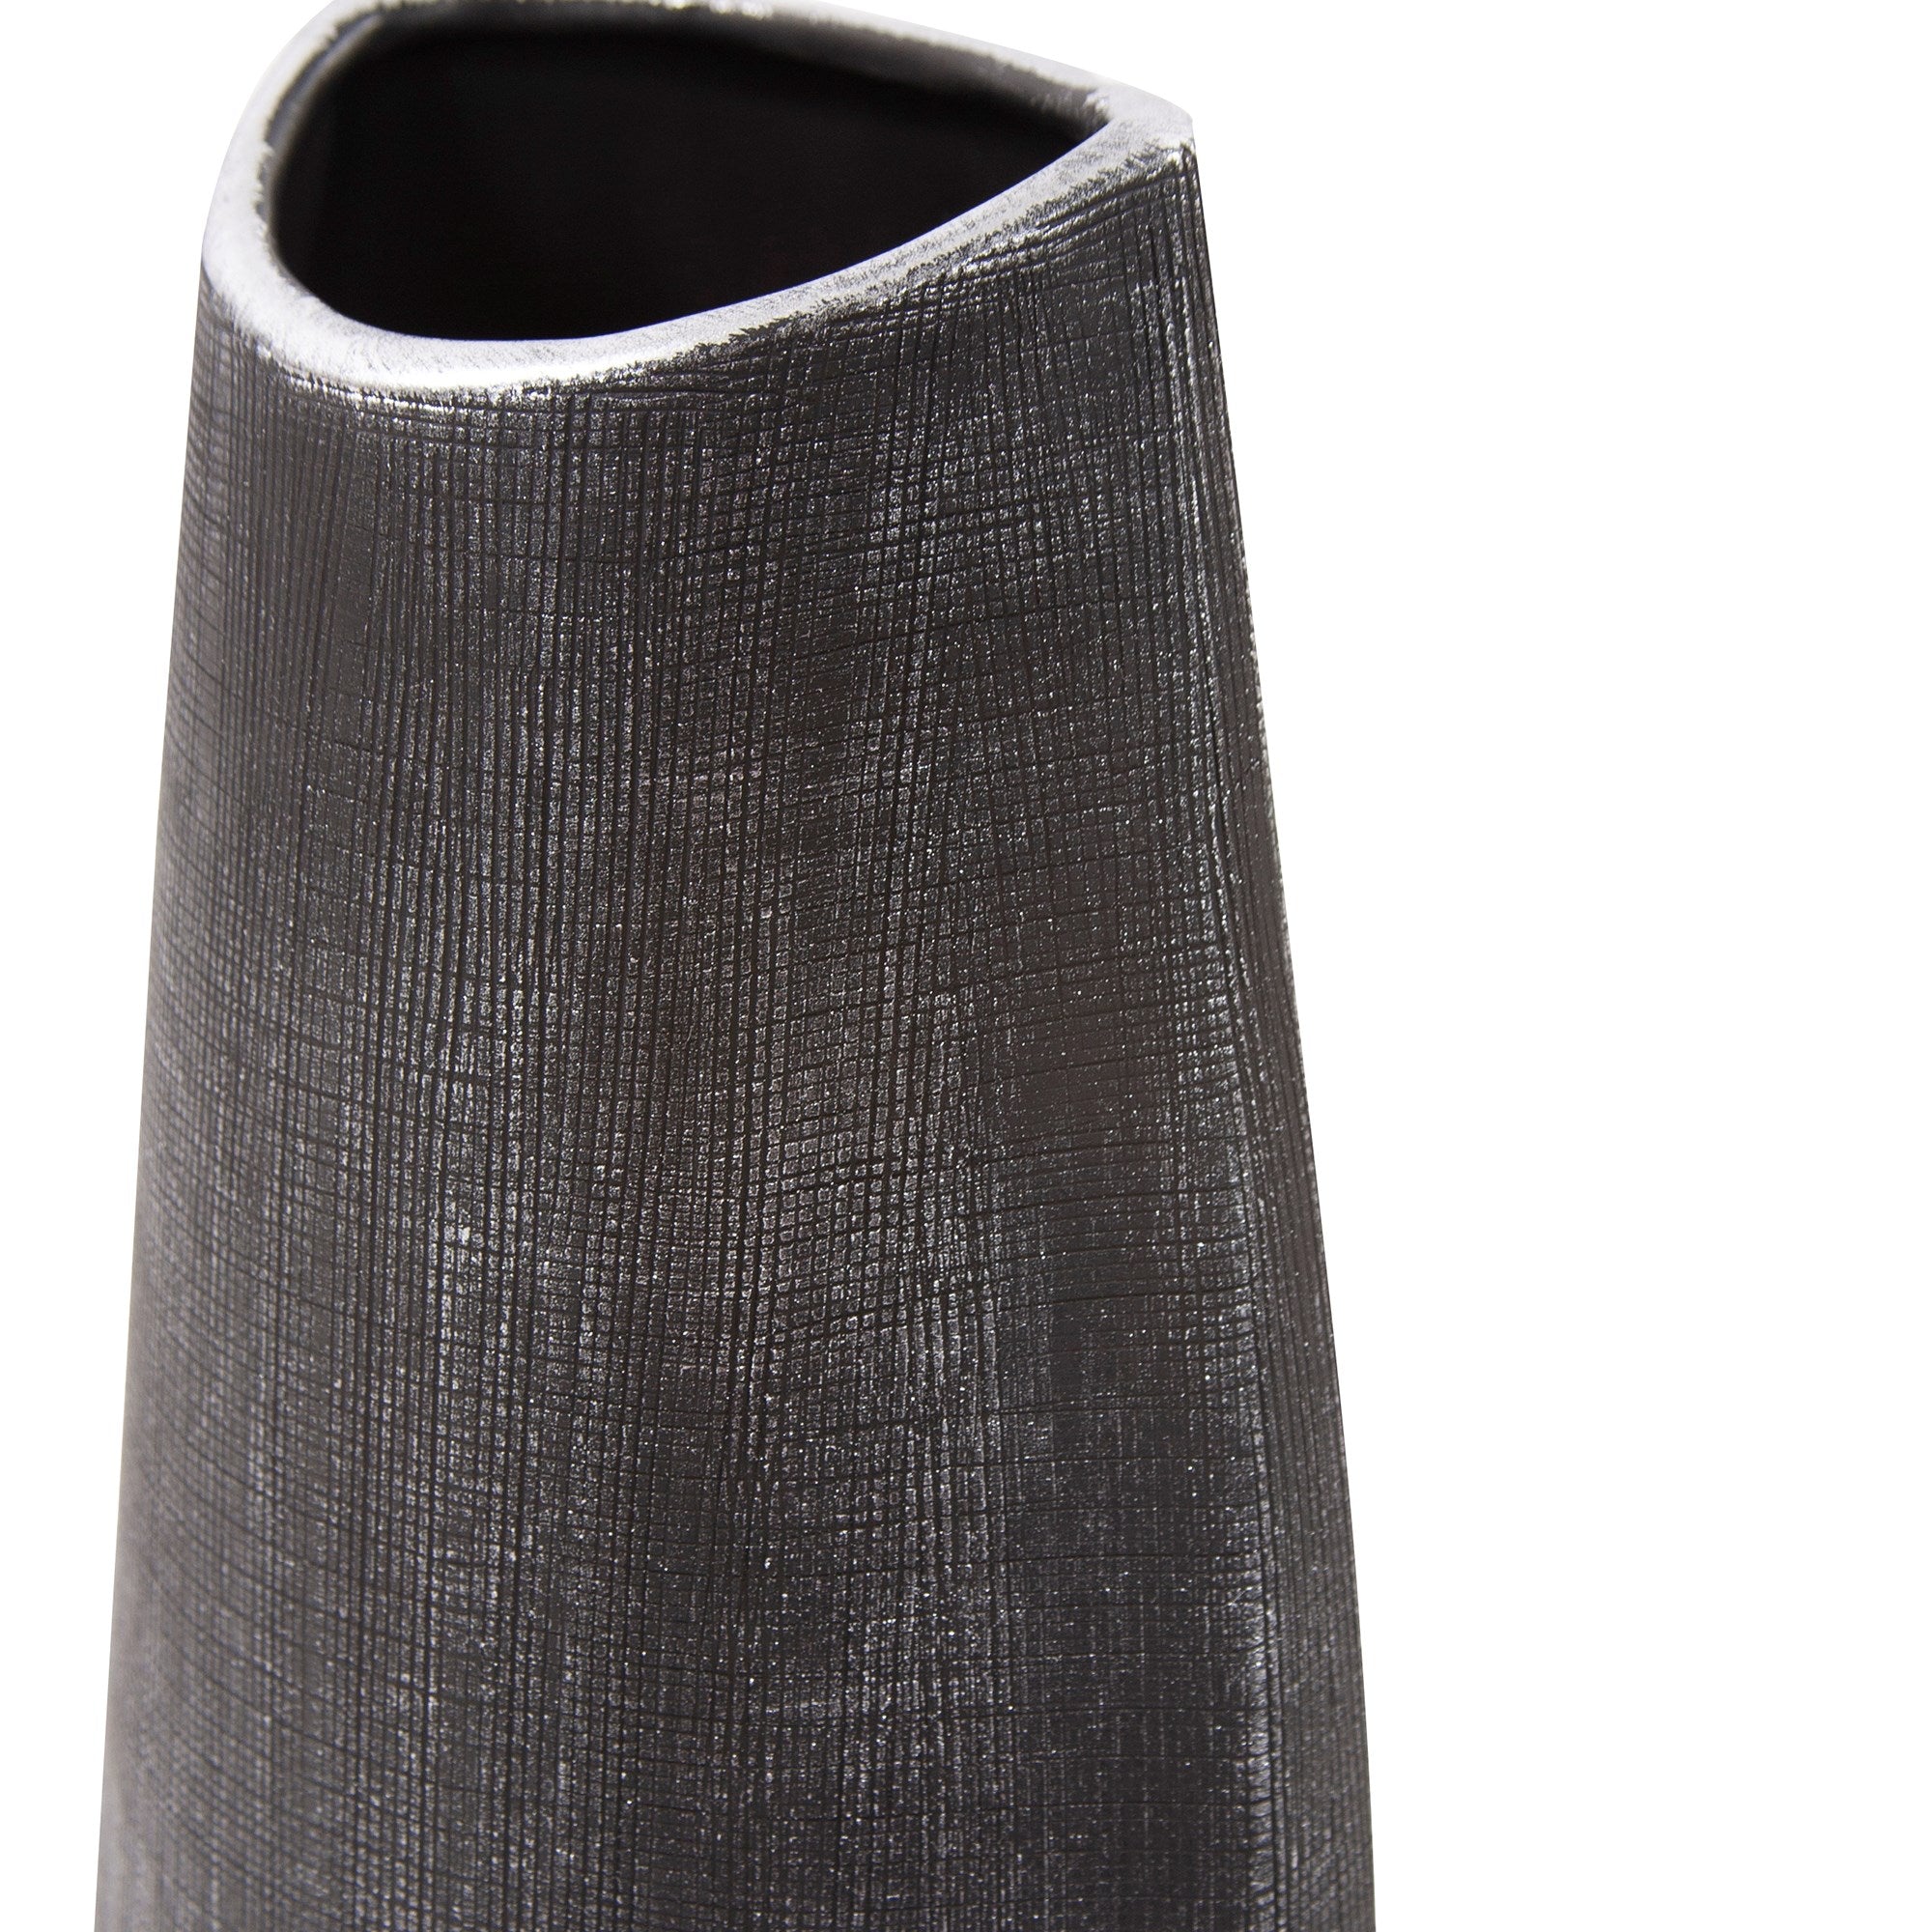 Textured Black Free Formed Ceramic Vase, Tall